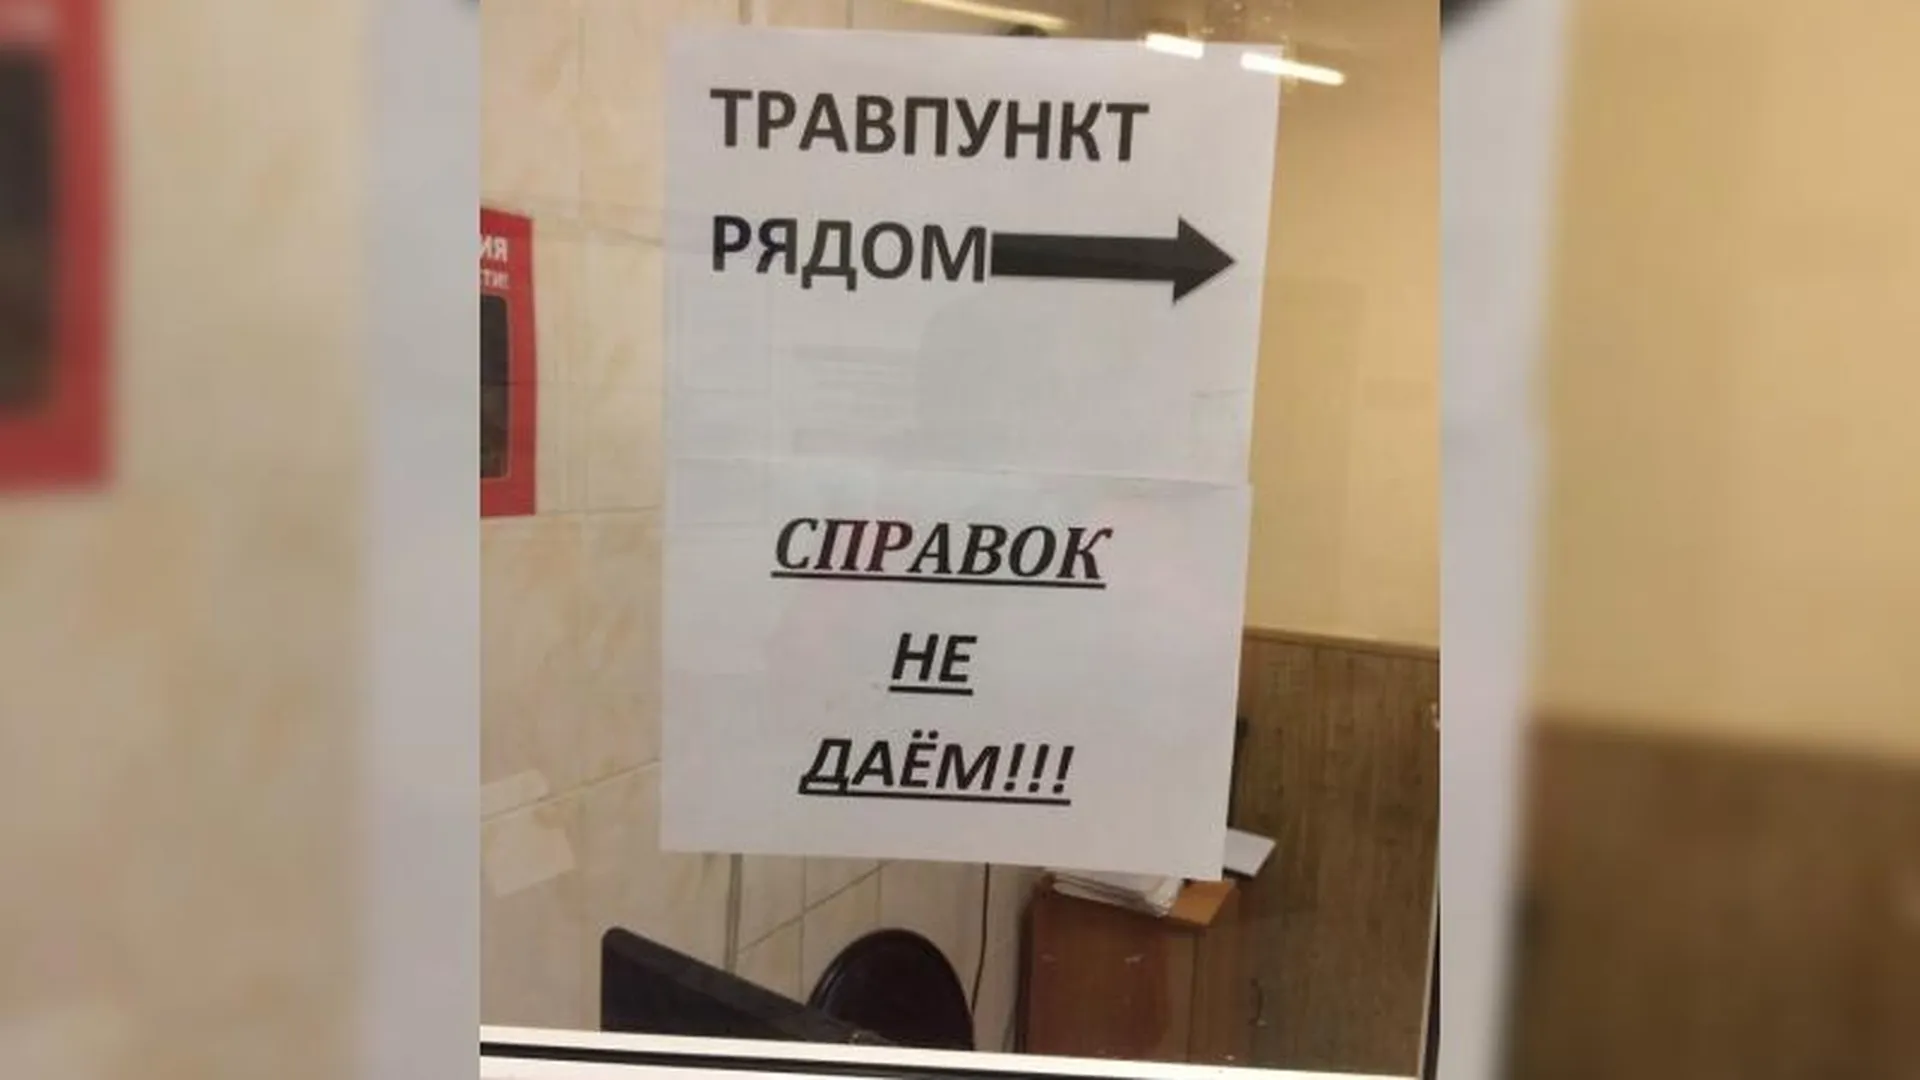 Лечат травами: объявление с ошибкой о травмпункте в Подольске насмешило пациентов